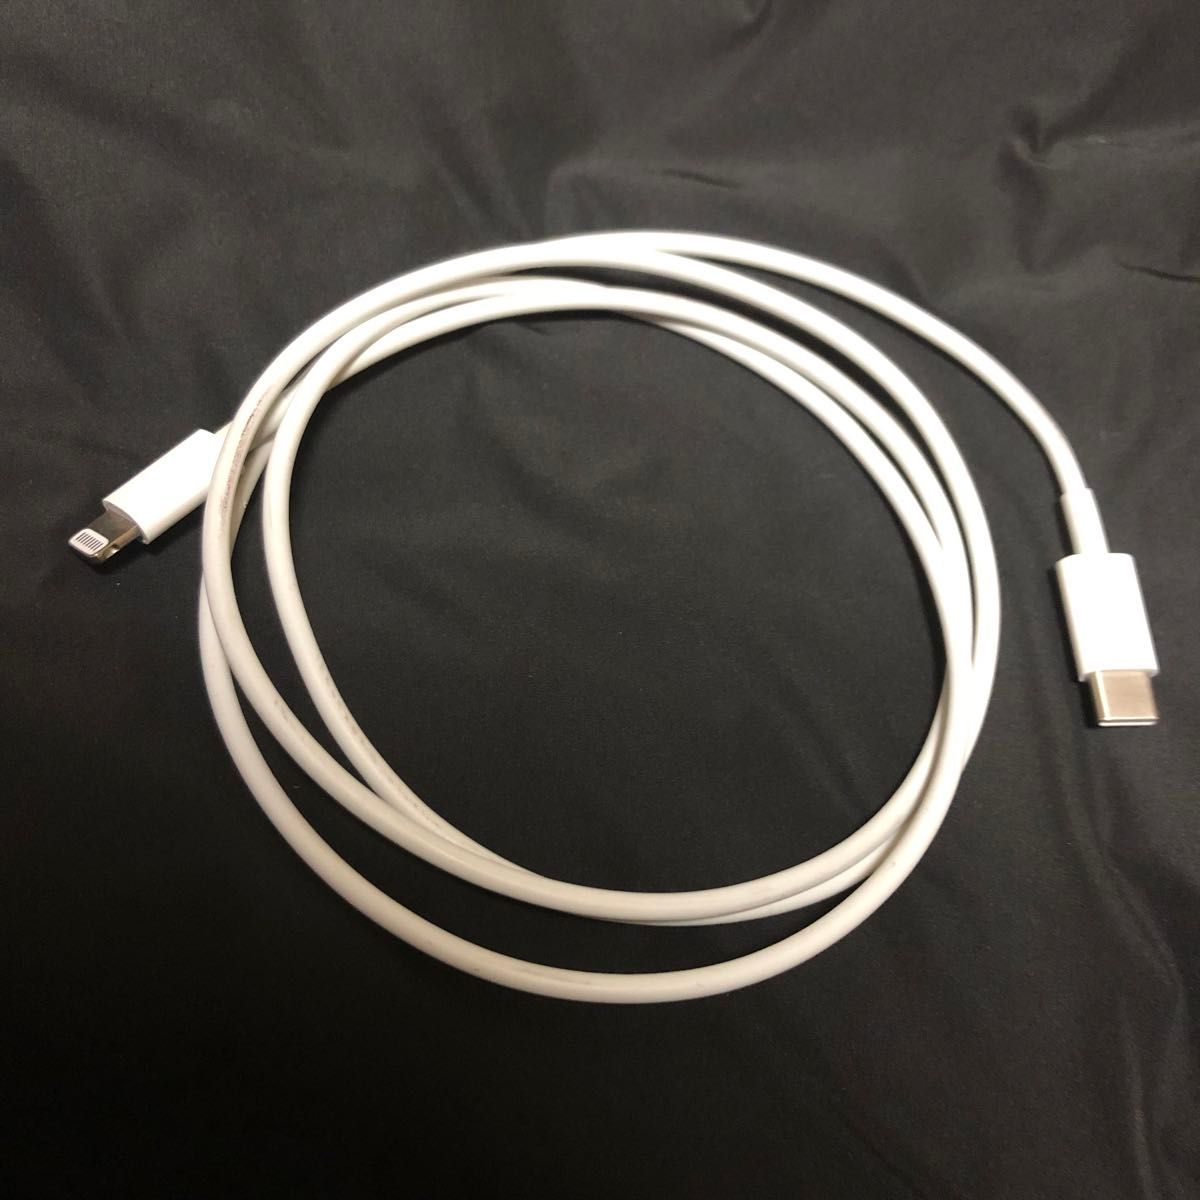 Apple純正 iPhone急速充電器 20W USB-C ACアダプタ ライトニングケーブルセット Lightningケーブル